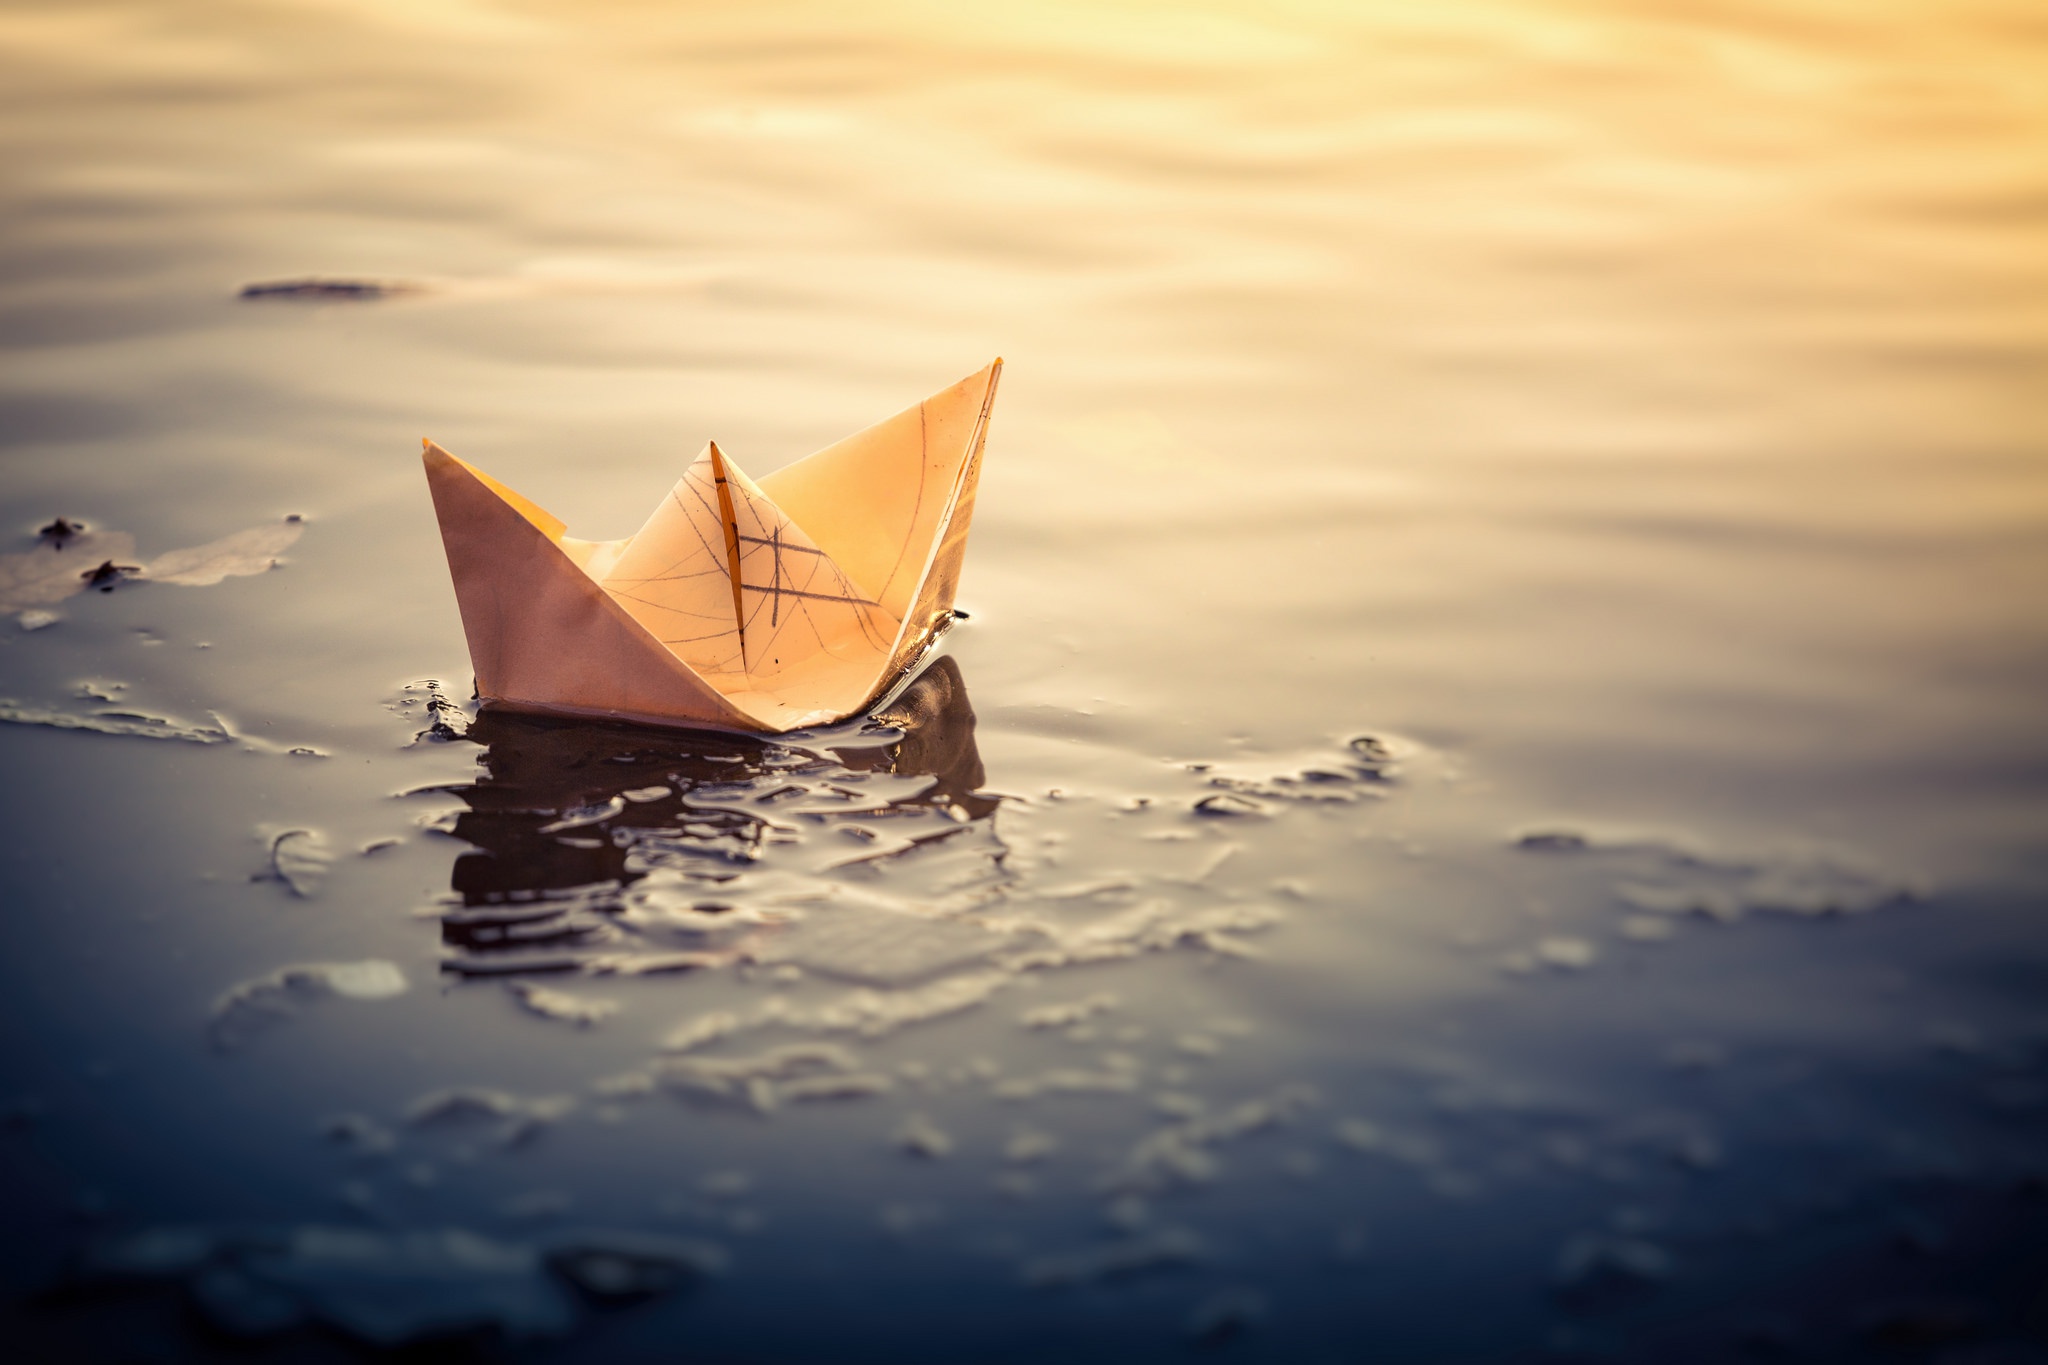 Слушать бумажные кораблики. Бумажный кораблик. Бумажный кораблик на воде. Бумажный кораблик в море. Маленький бумажный кораблик.